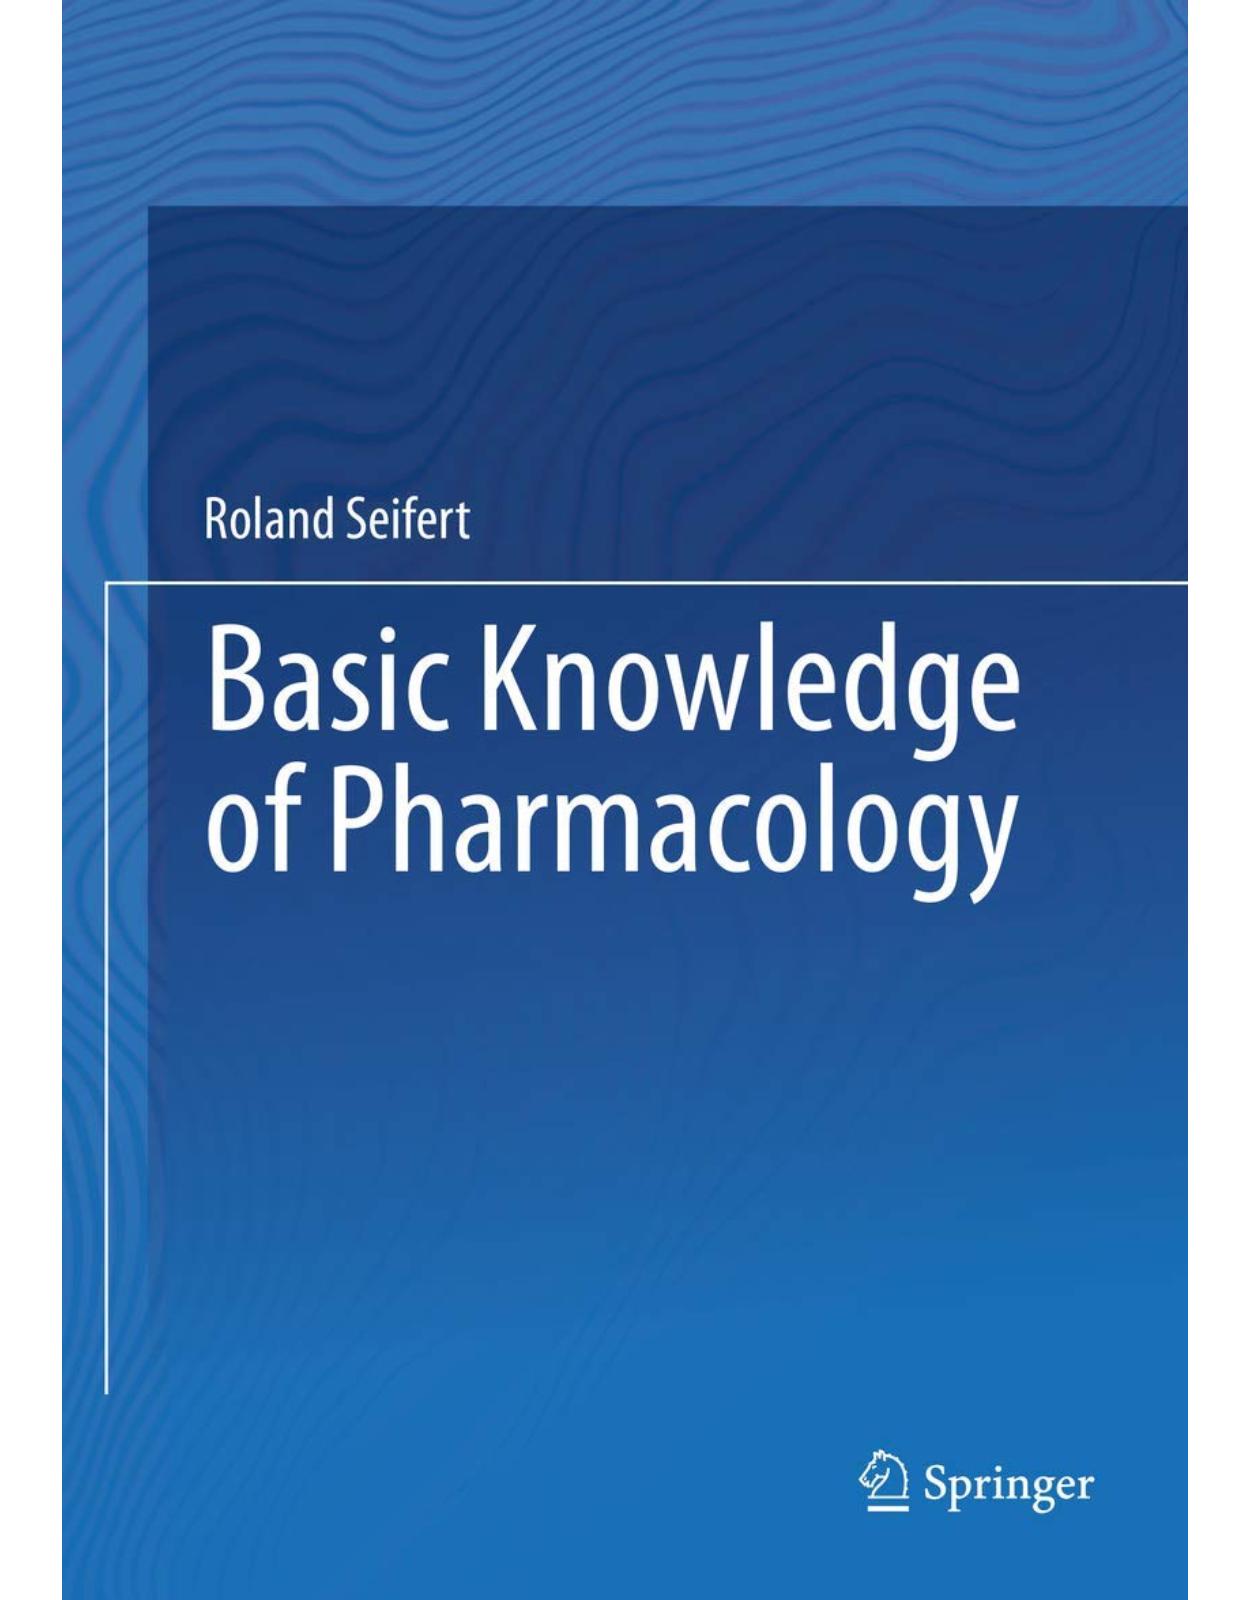 Basic Knowledge of Pharmacology